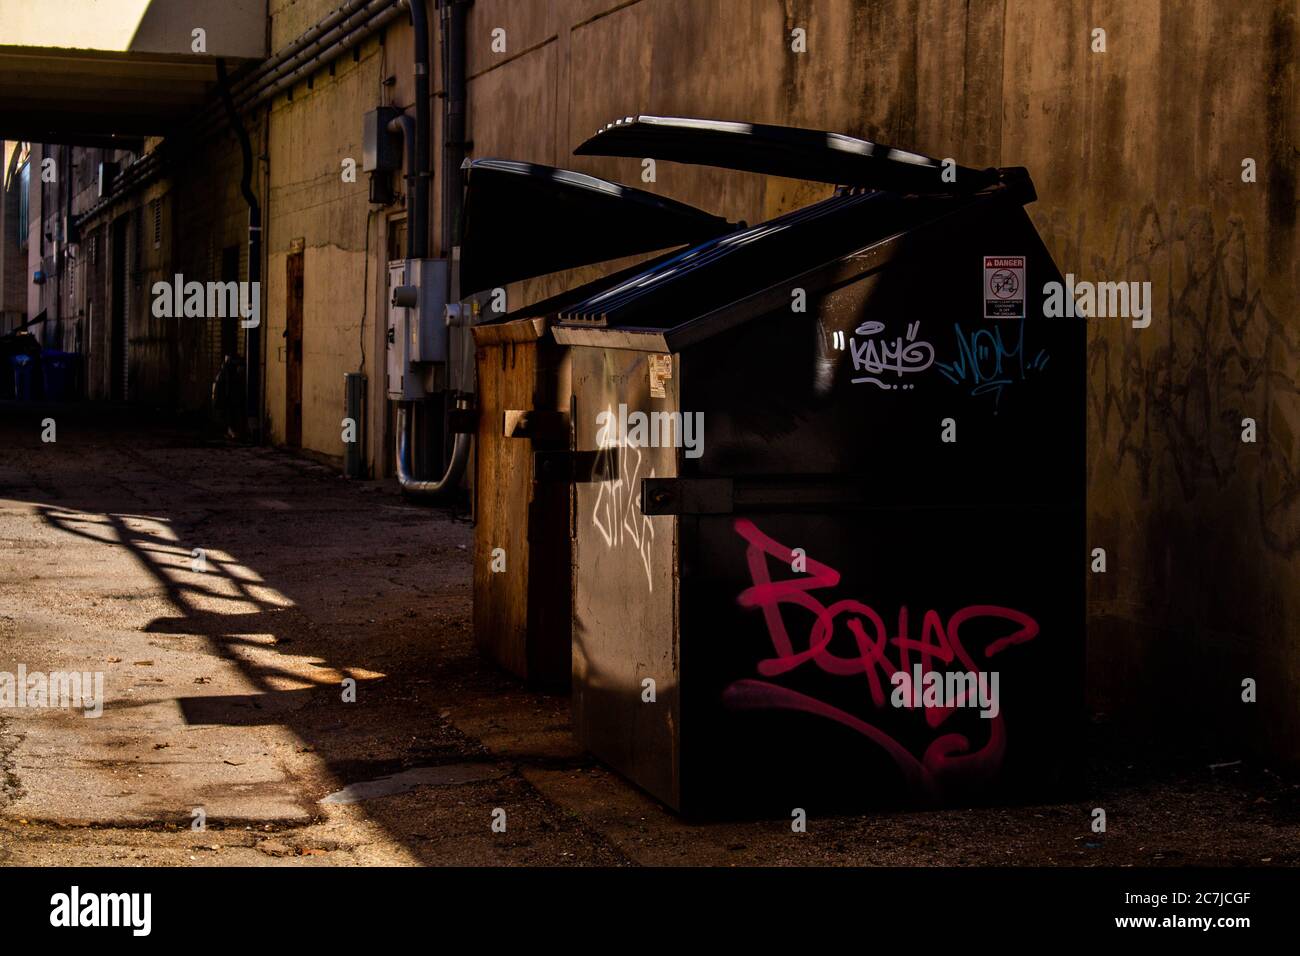 Graffiti etiquetó los cubos de basura en un callejón. Se encuentra en el centro de Waco. Foto de stock